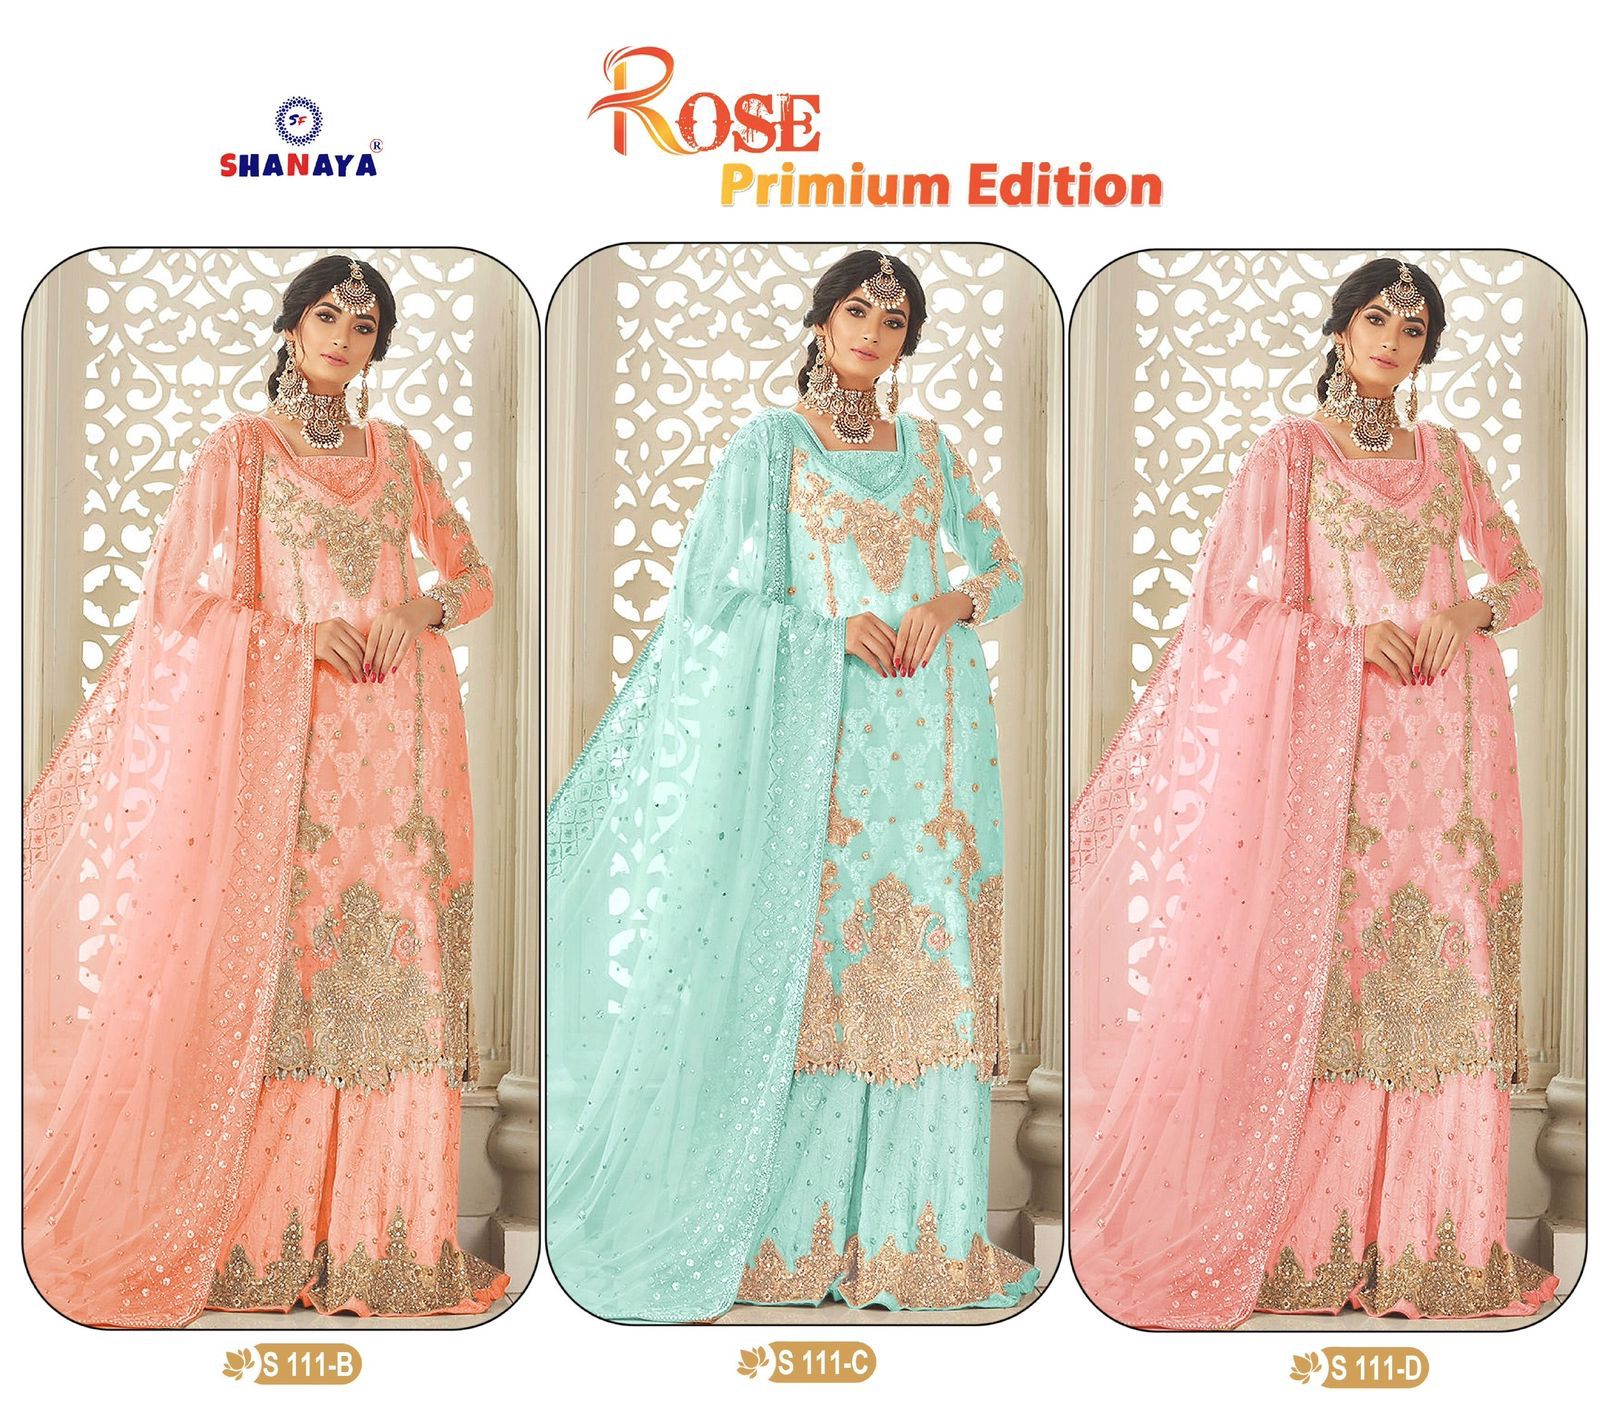 Shanaya Fashion Rose Premium Edition S-111 Colors 